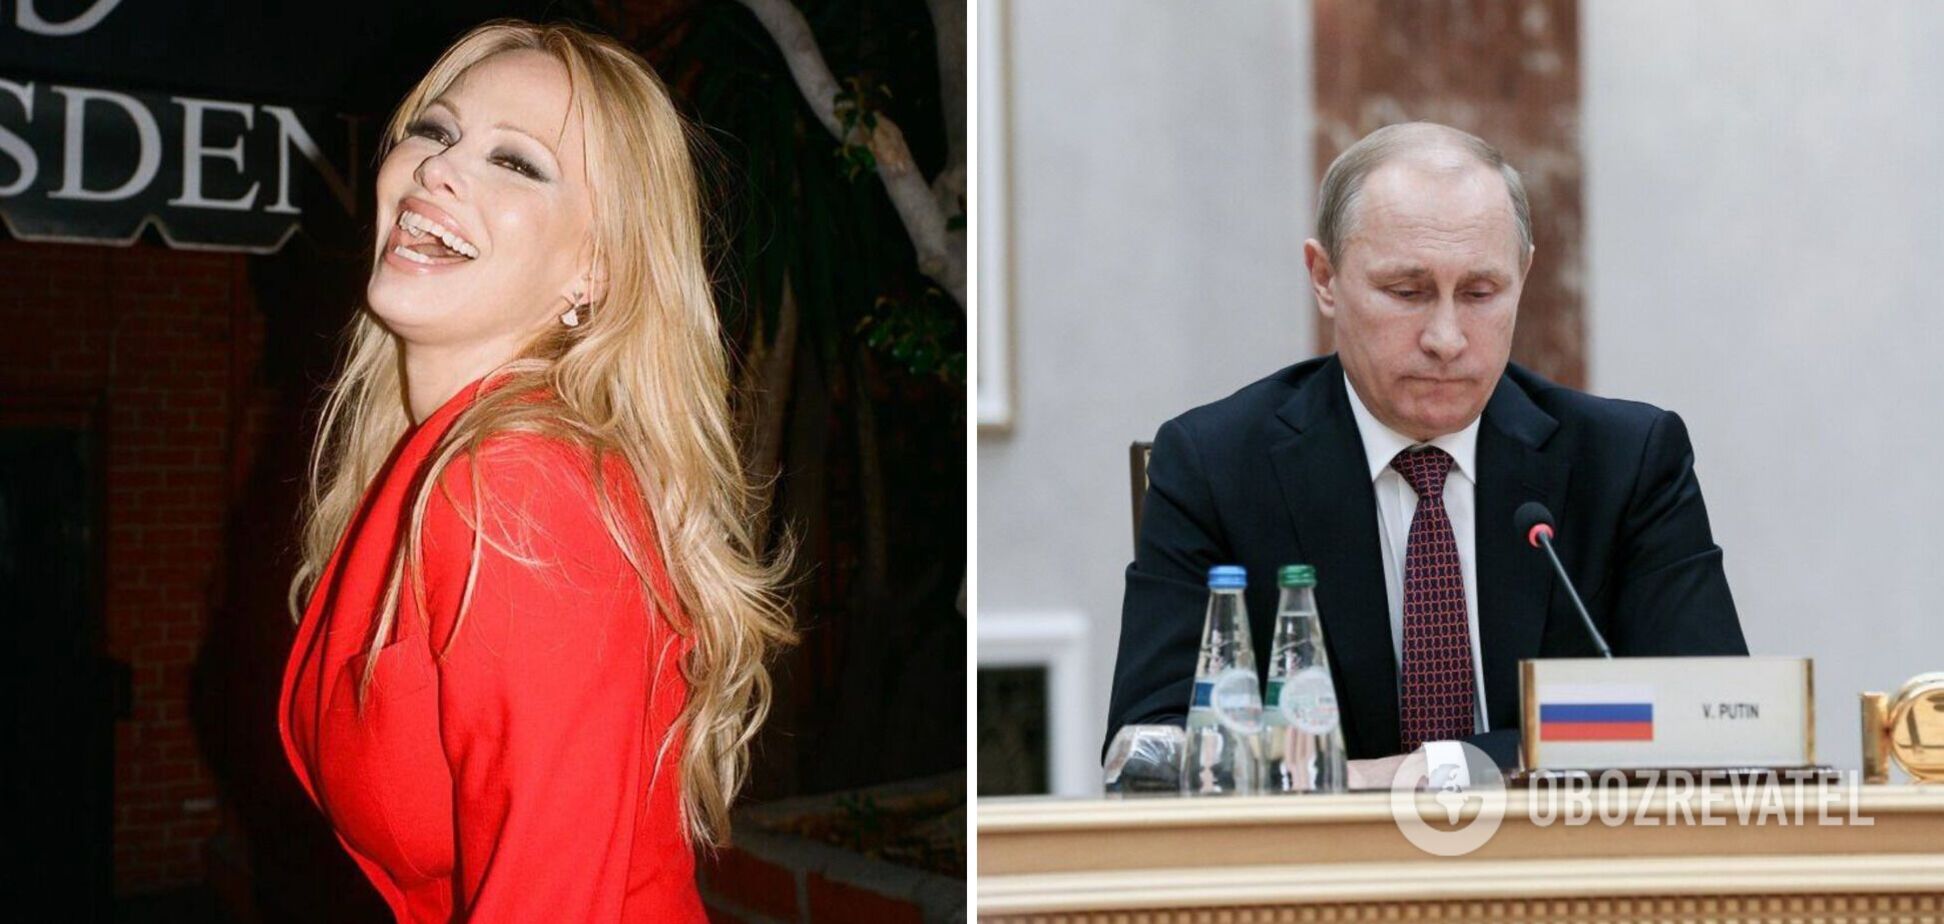 'Він був радий, що я прийшла': Памела Андерсон згадала про зустріч із Путіним у Кремлі